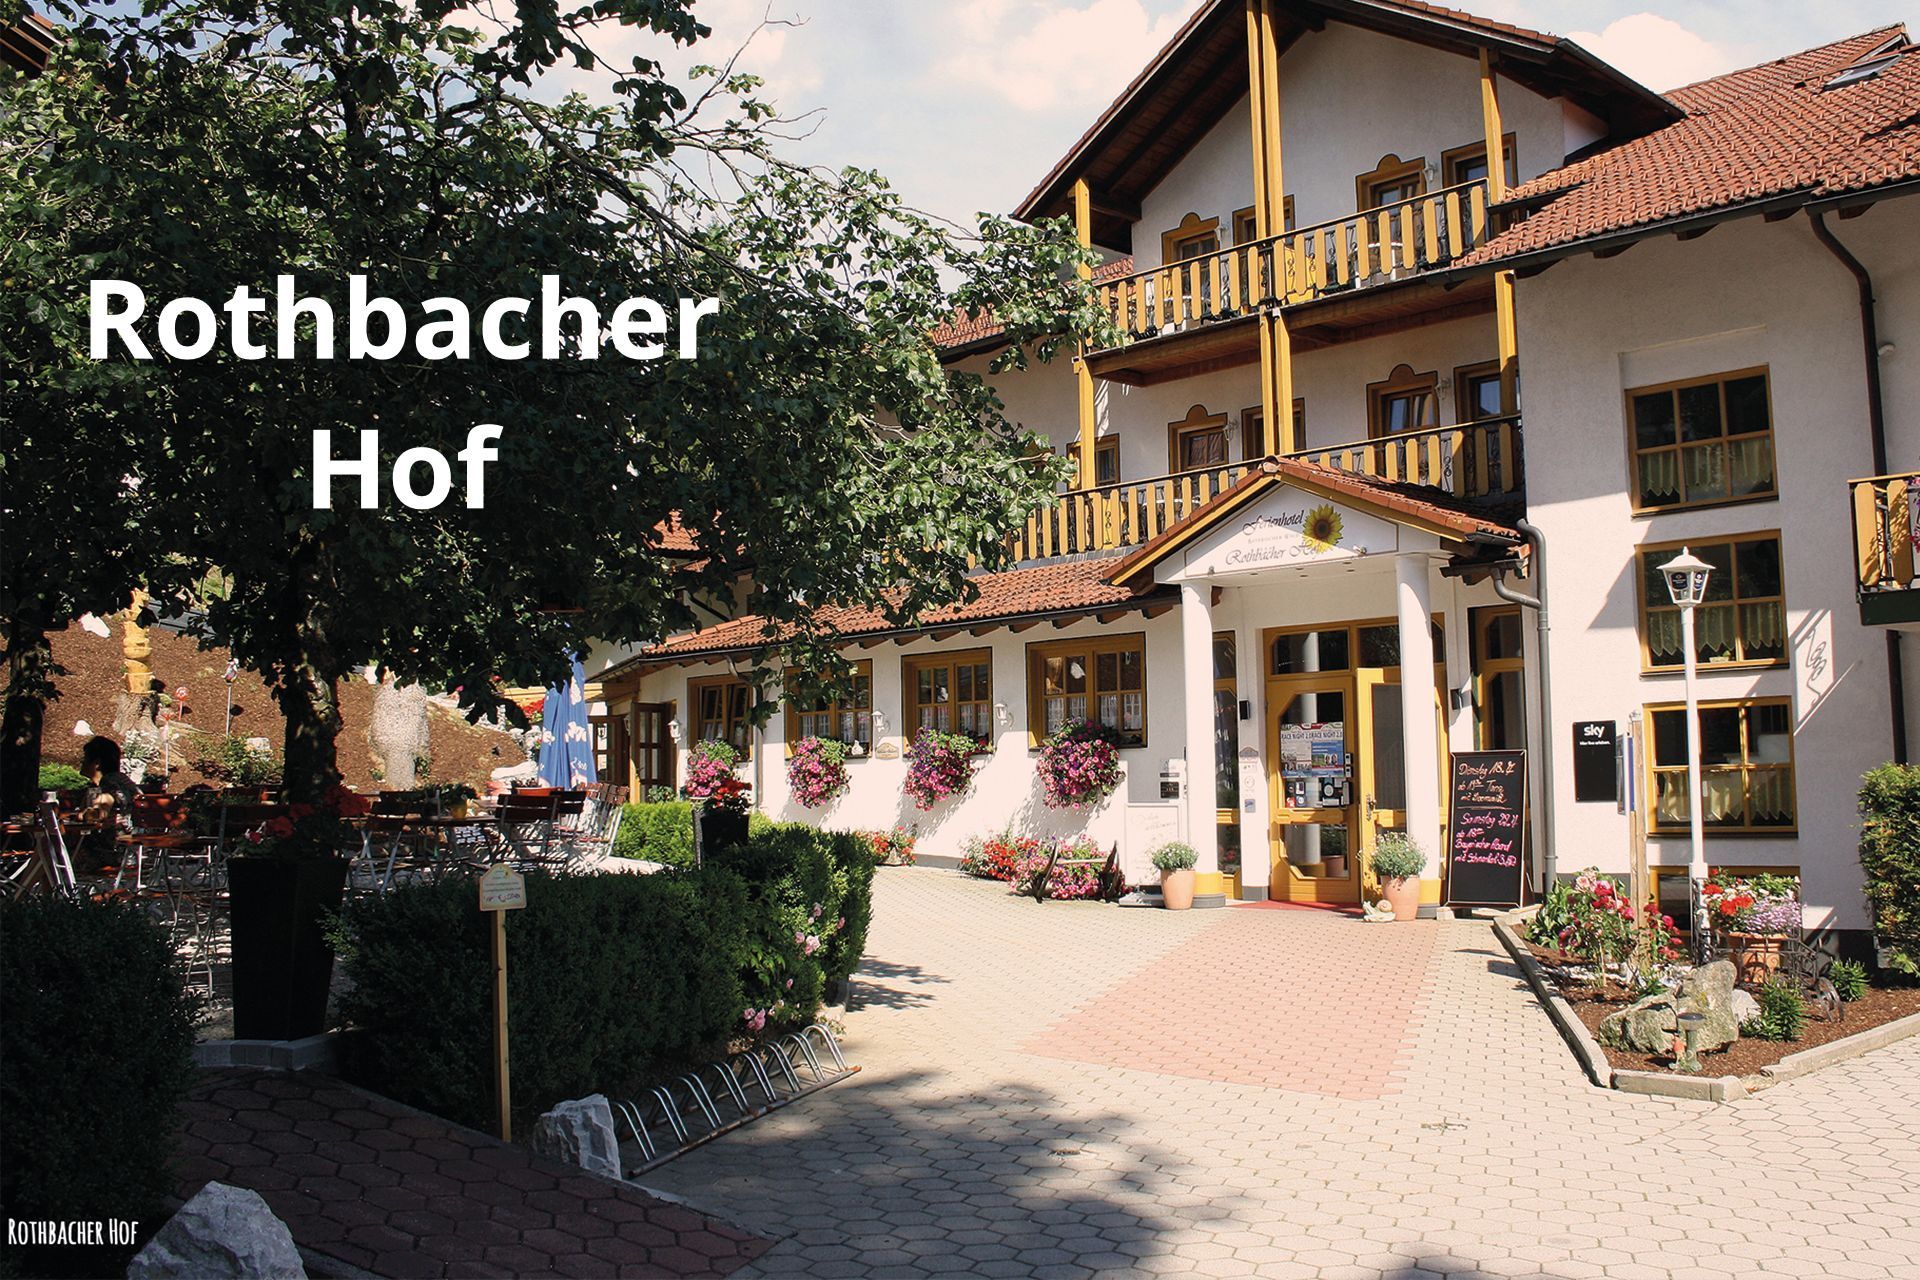 Rothbacher Hof in Bodenmais